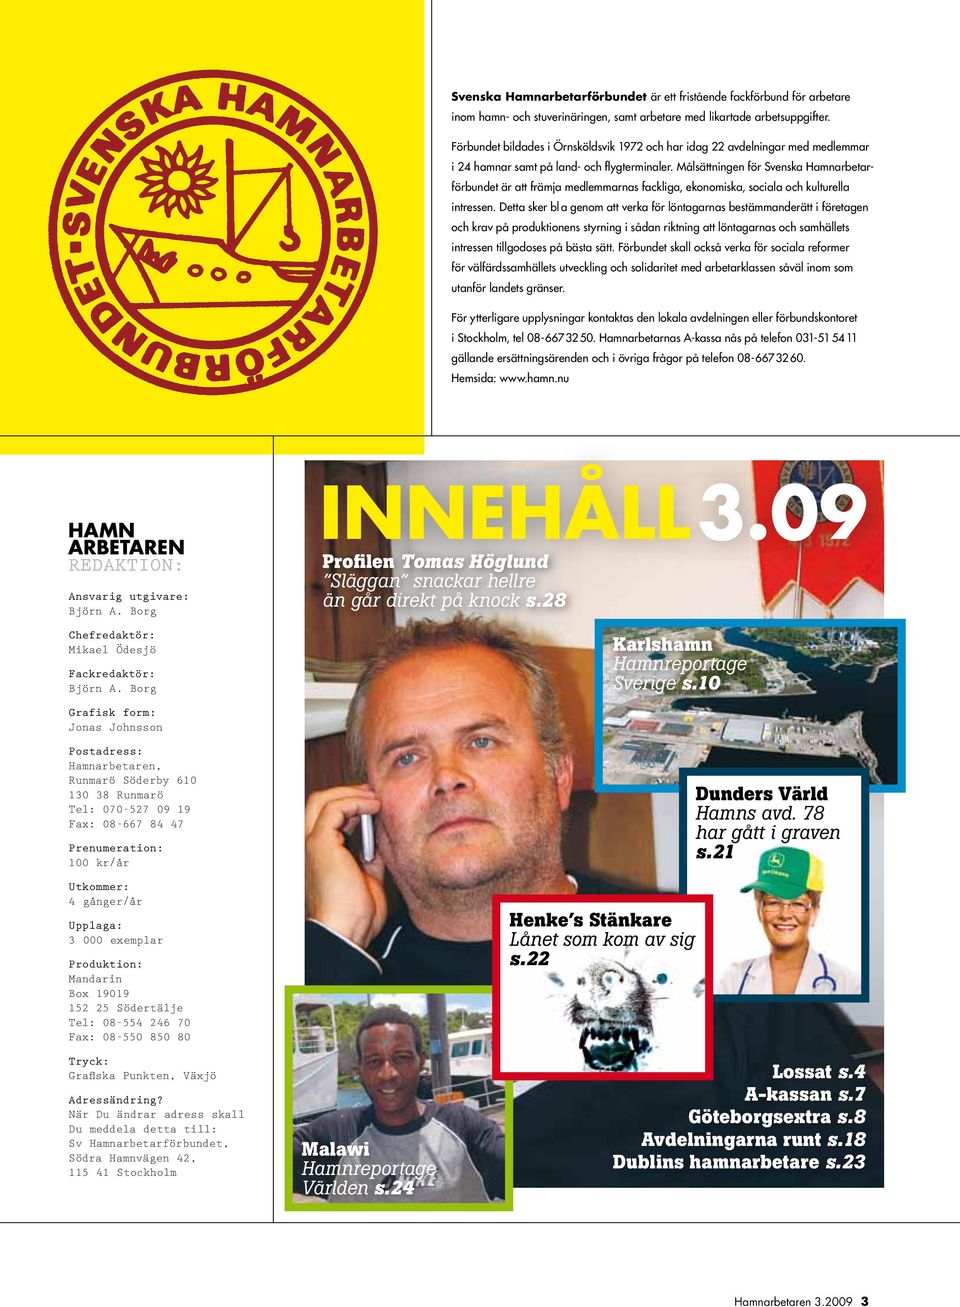 Målsättningen för Svenska Hamnarbetarförbundet är att främja medlemmarnas fackliga, ekonomiska, sociala och kulturella intressen.